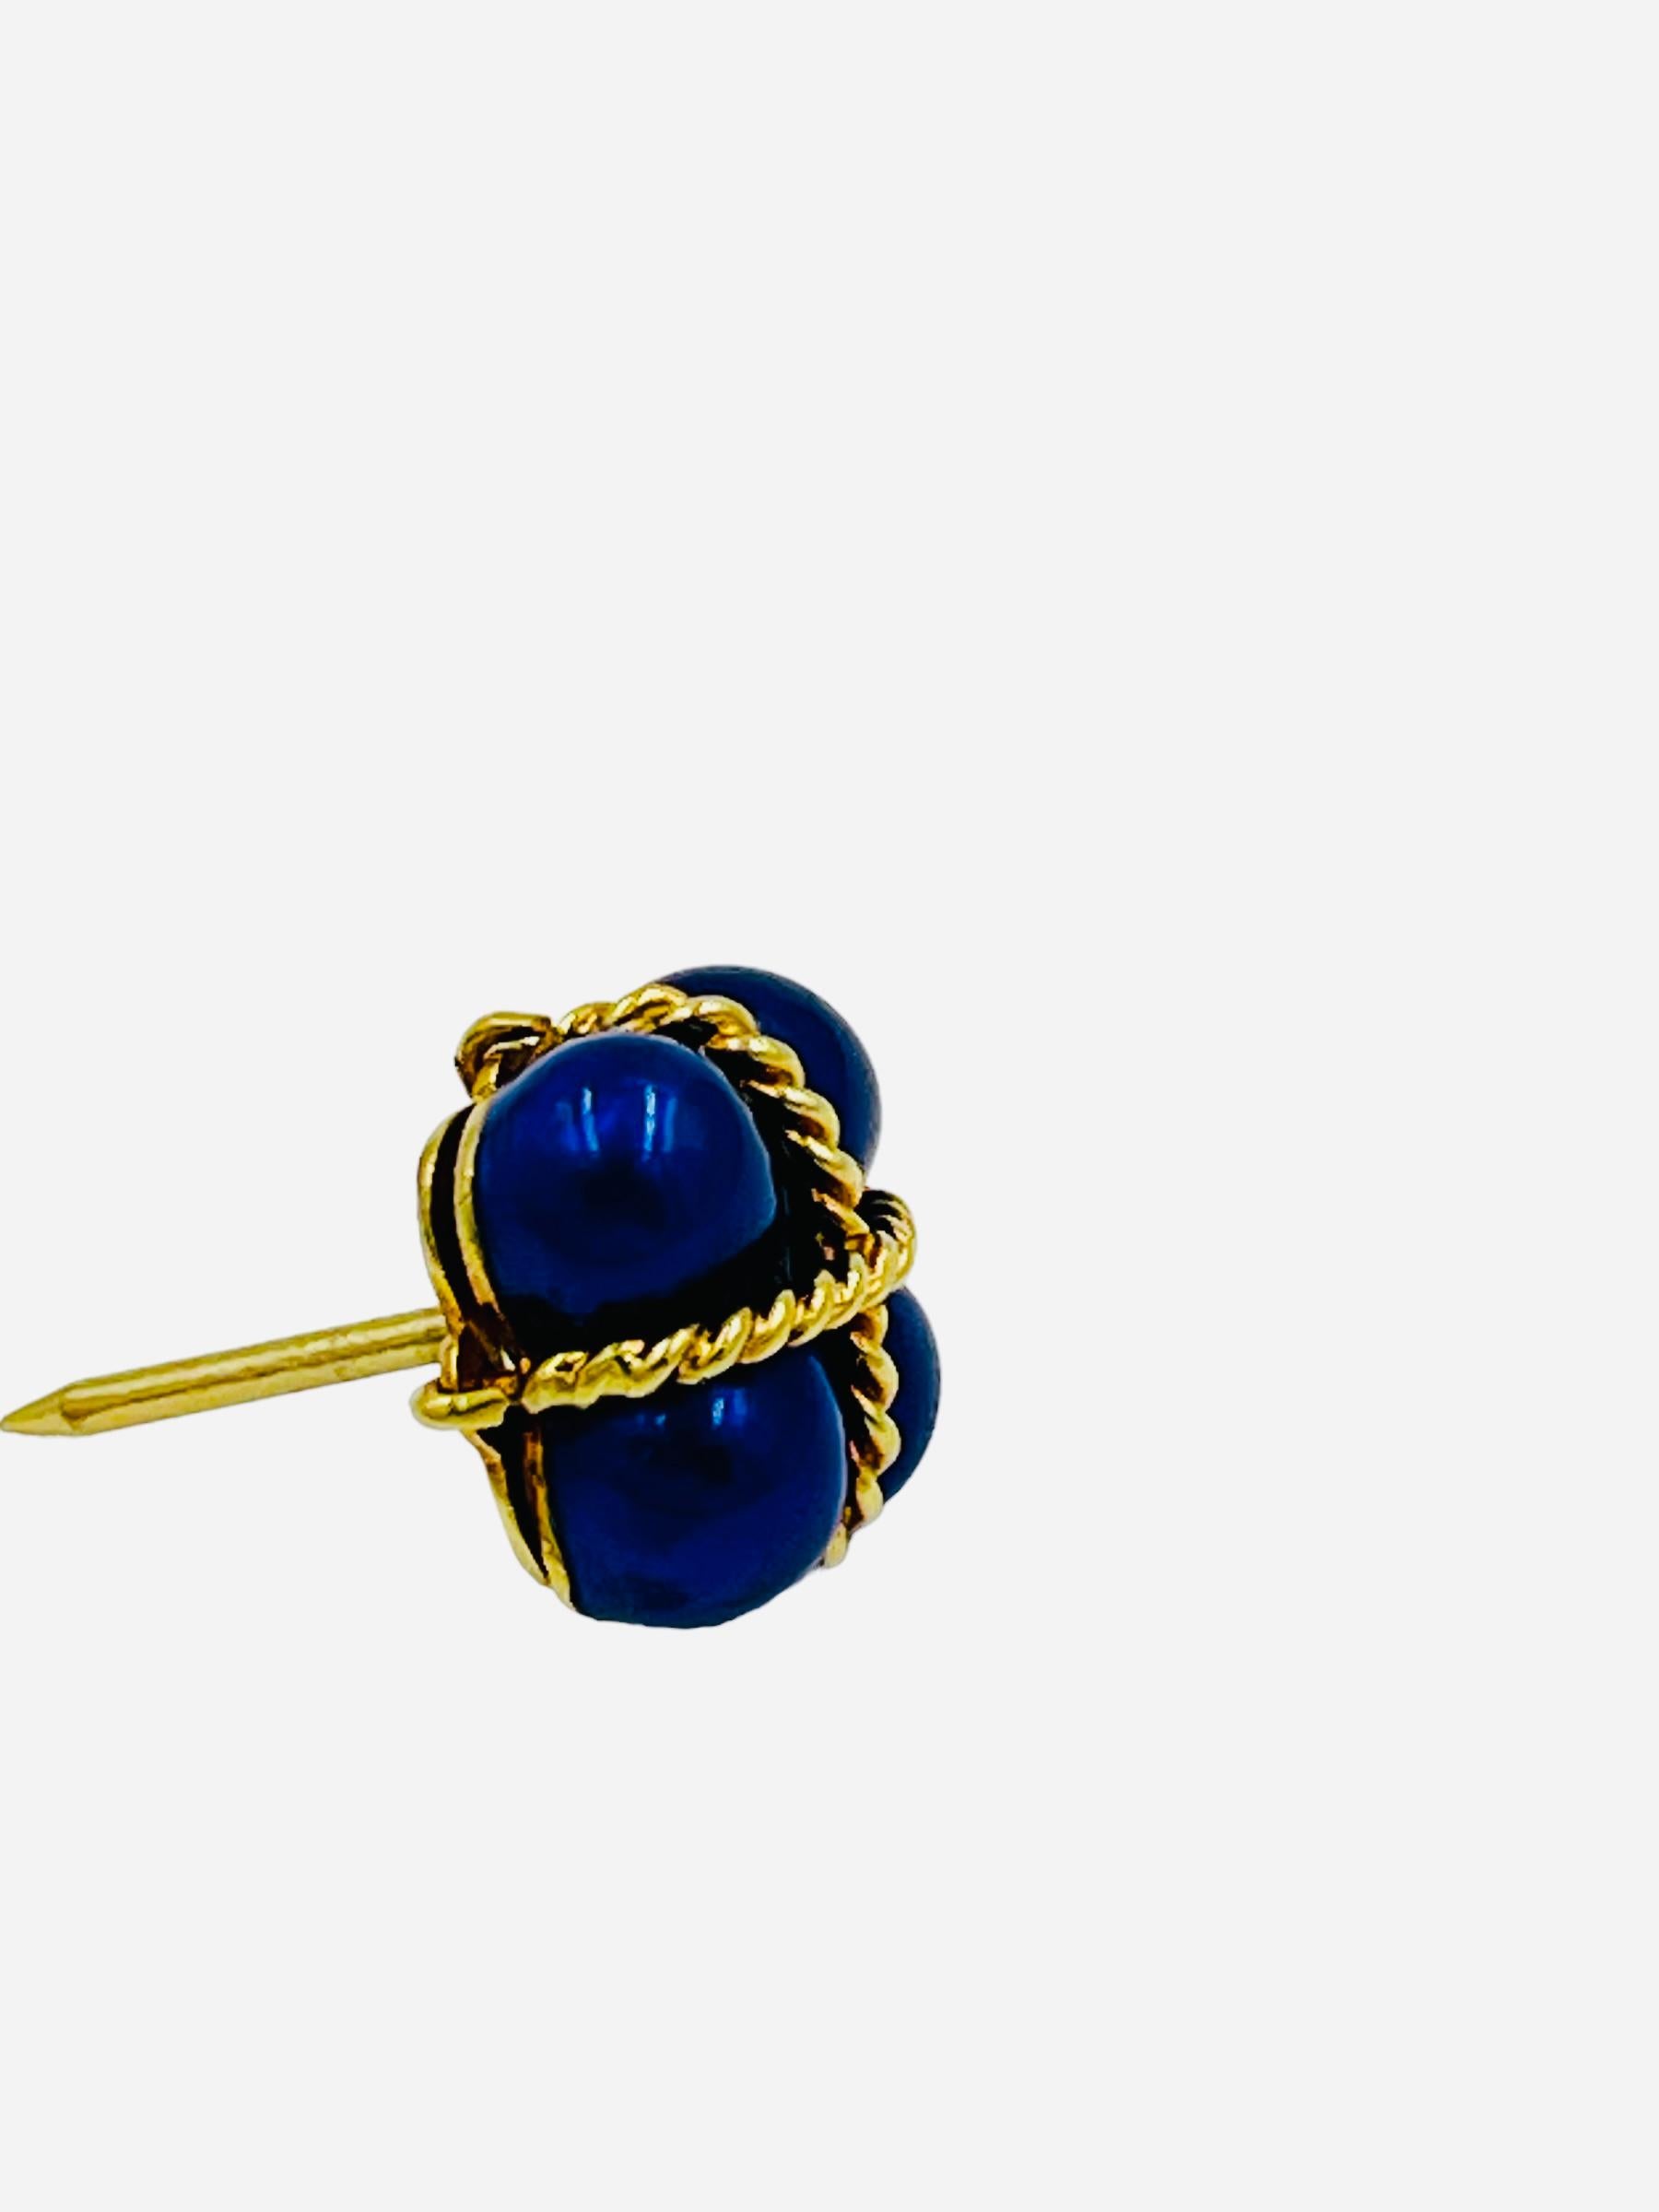 Vintage 18k Gelbgold Blau Emaille Anstecknadel, Krawattennadel, circa 1980er Jahre.  Er ist wunderschön gearbeitet mit einem detailreichen, gedrehten Seilmuster, das um den emaillierten Krawattenhalter gewickelt ist.

Er misst 11 mm x 11 mm und